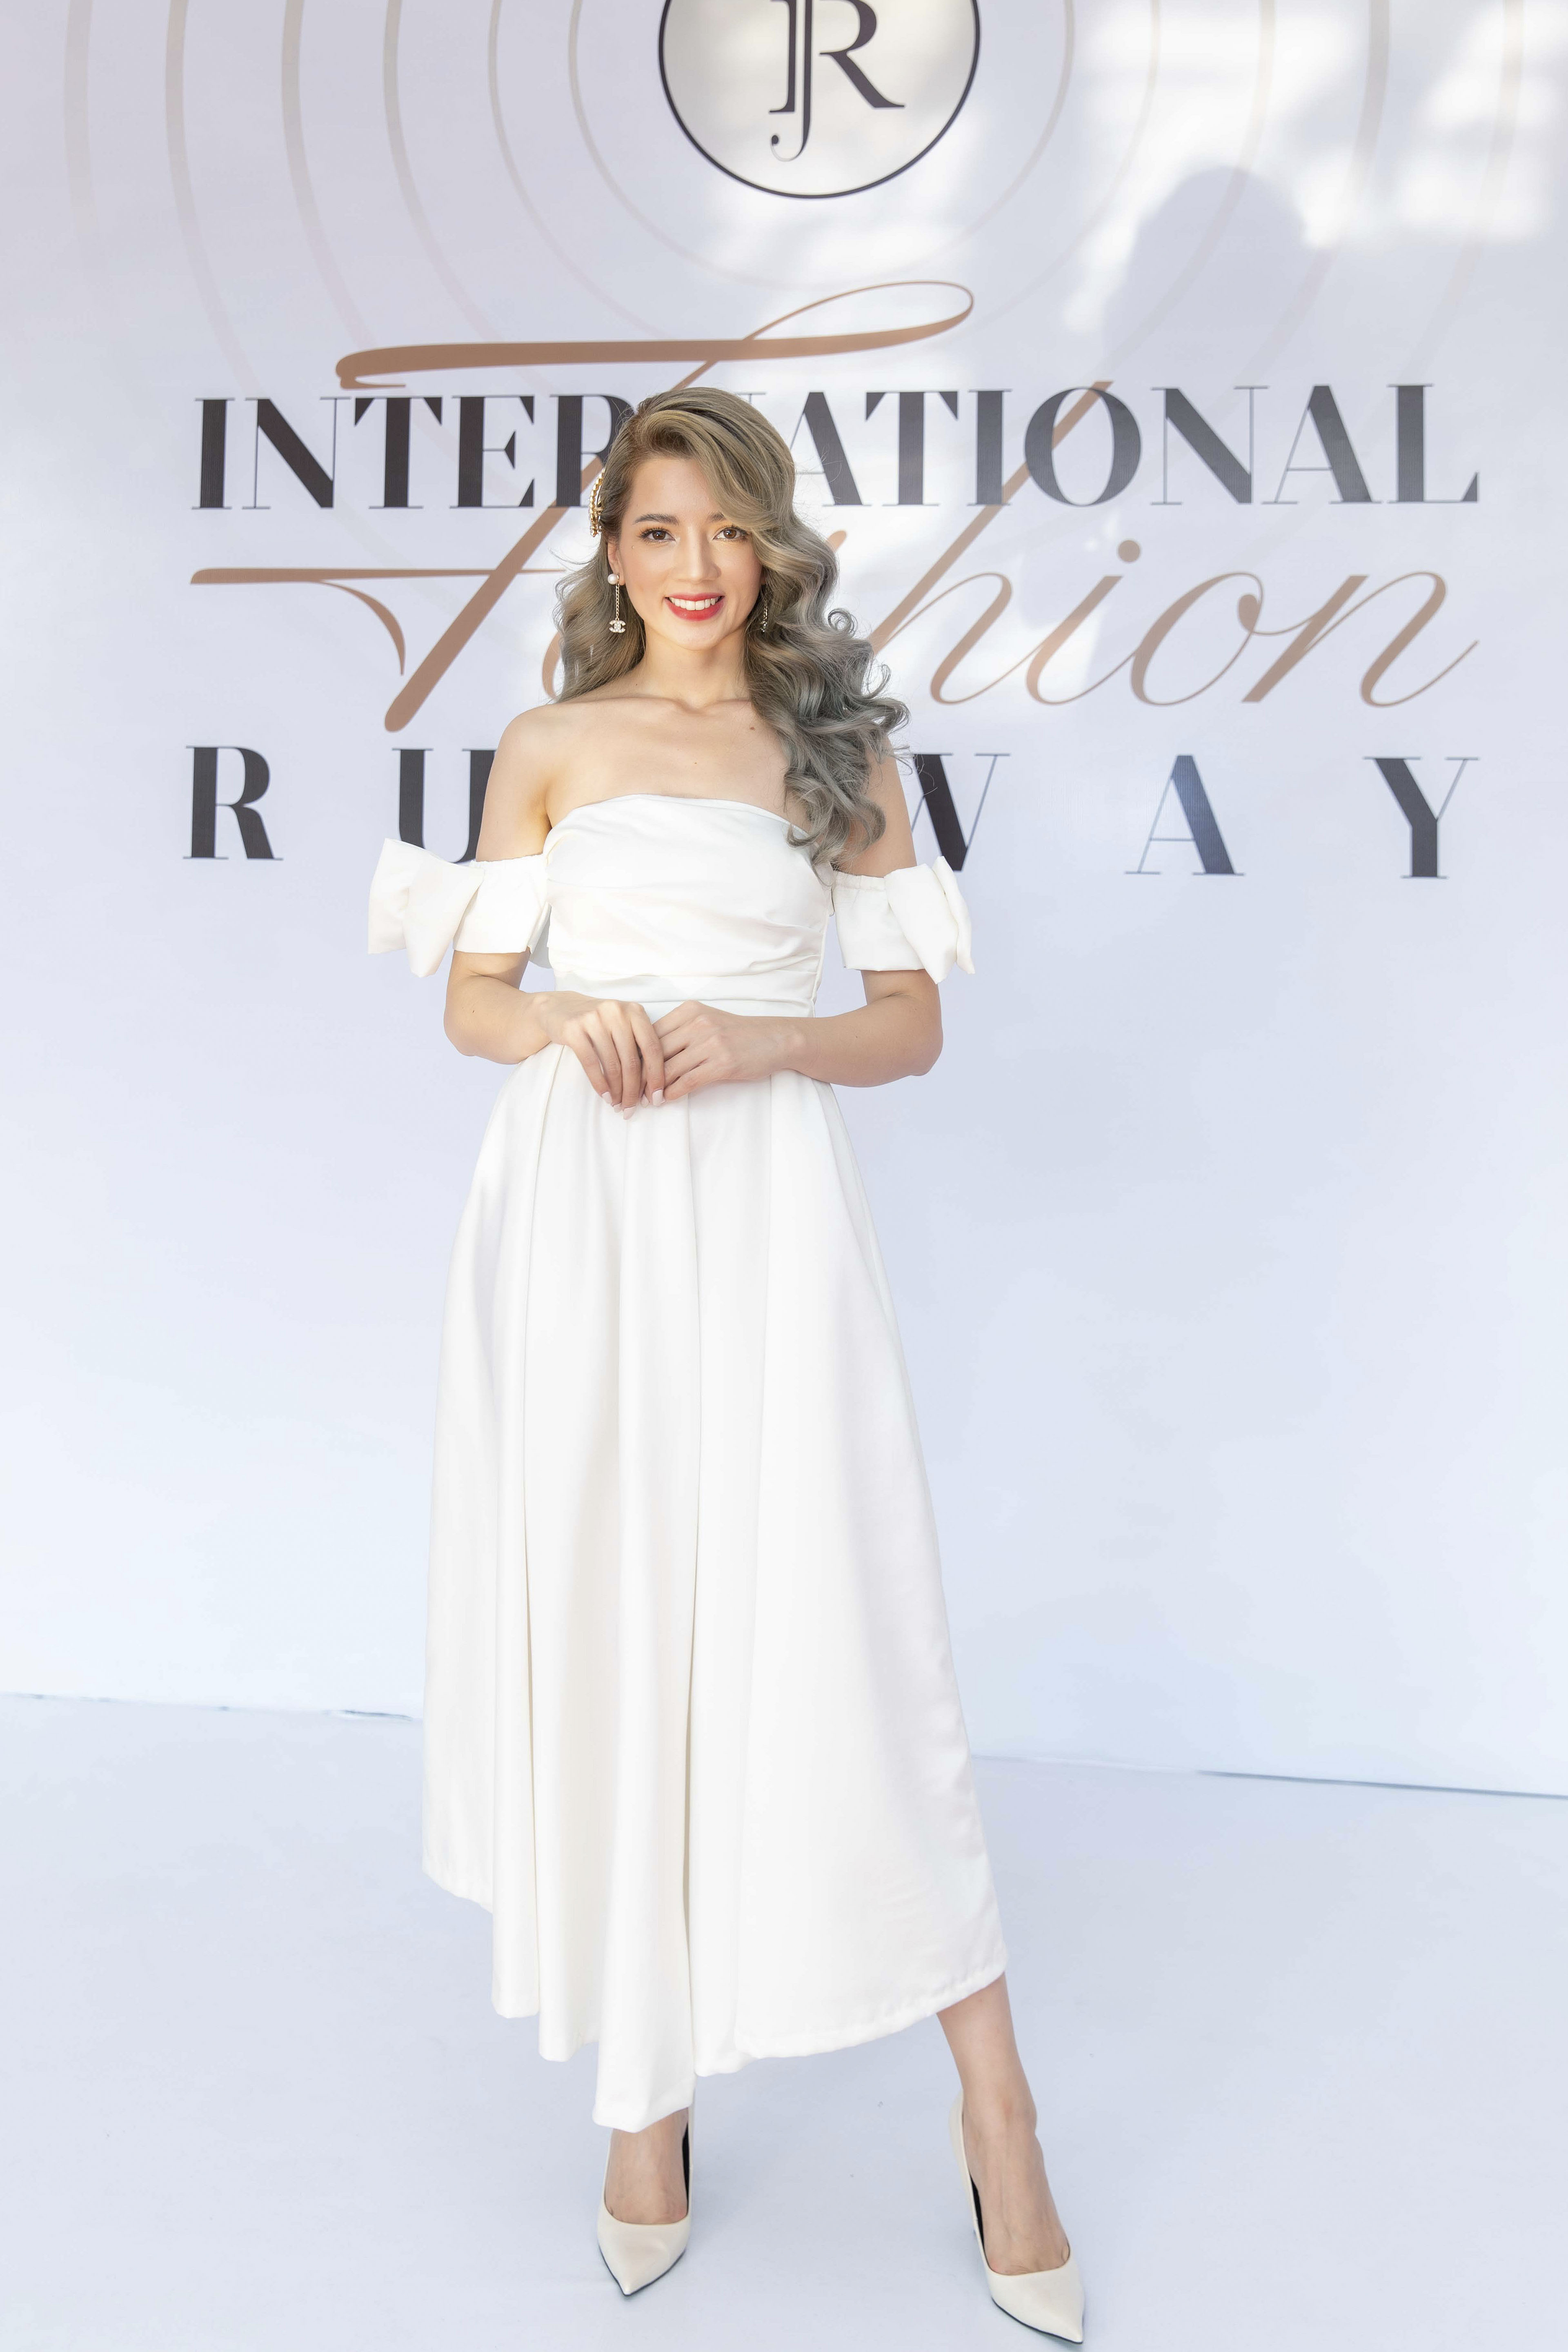 Siêu mẫu Hà Anh thần thái 'ngút ngàn' mở màn sàn catwalk International Fashion Week - ảnh 4